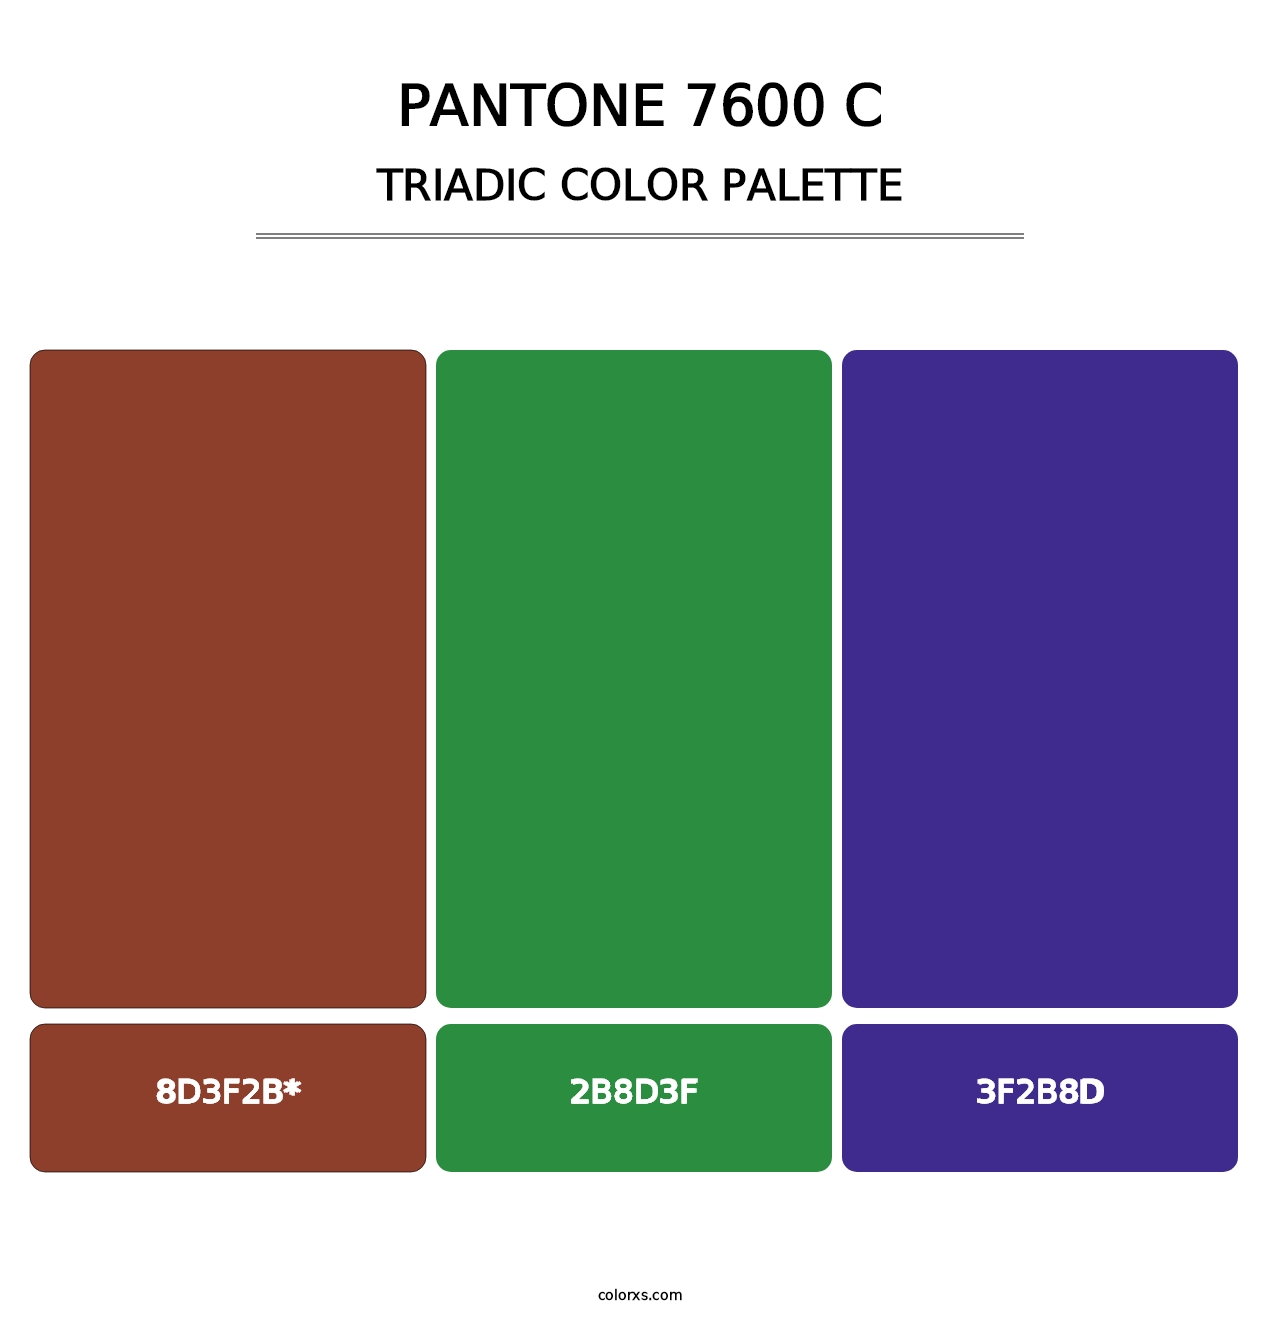 PANTONE 7600 C - Triadic Color Palette